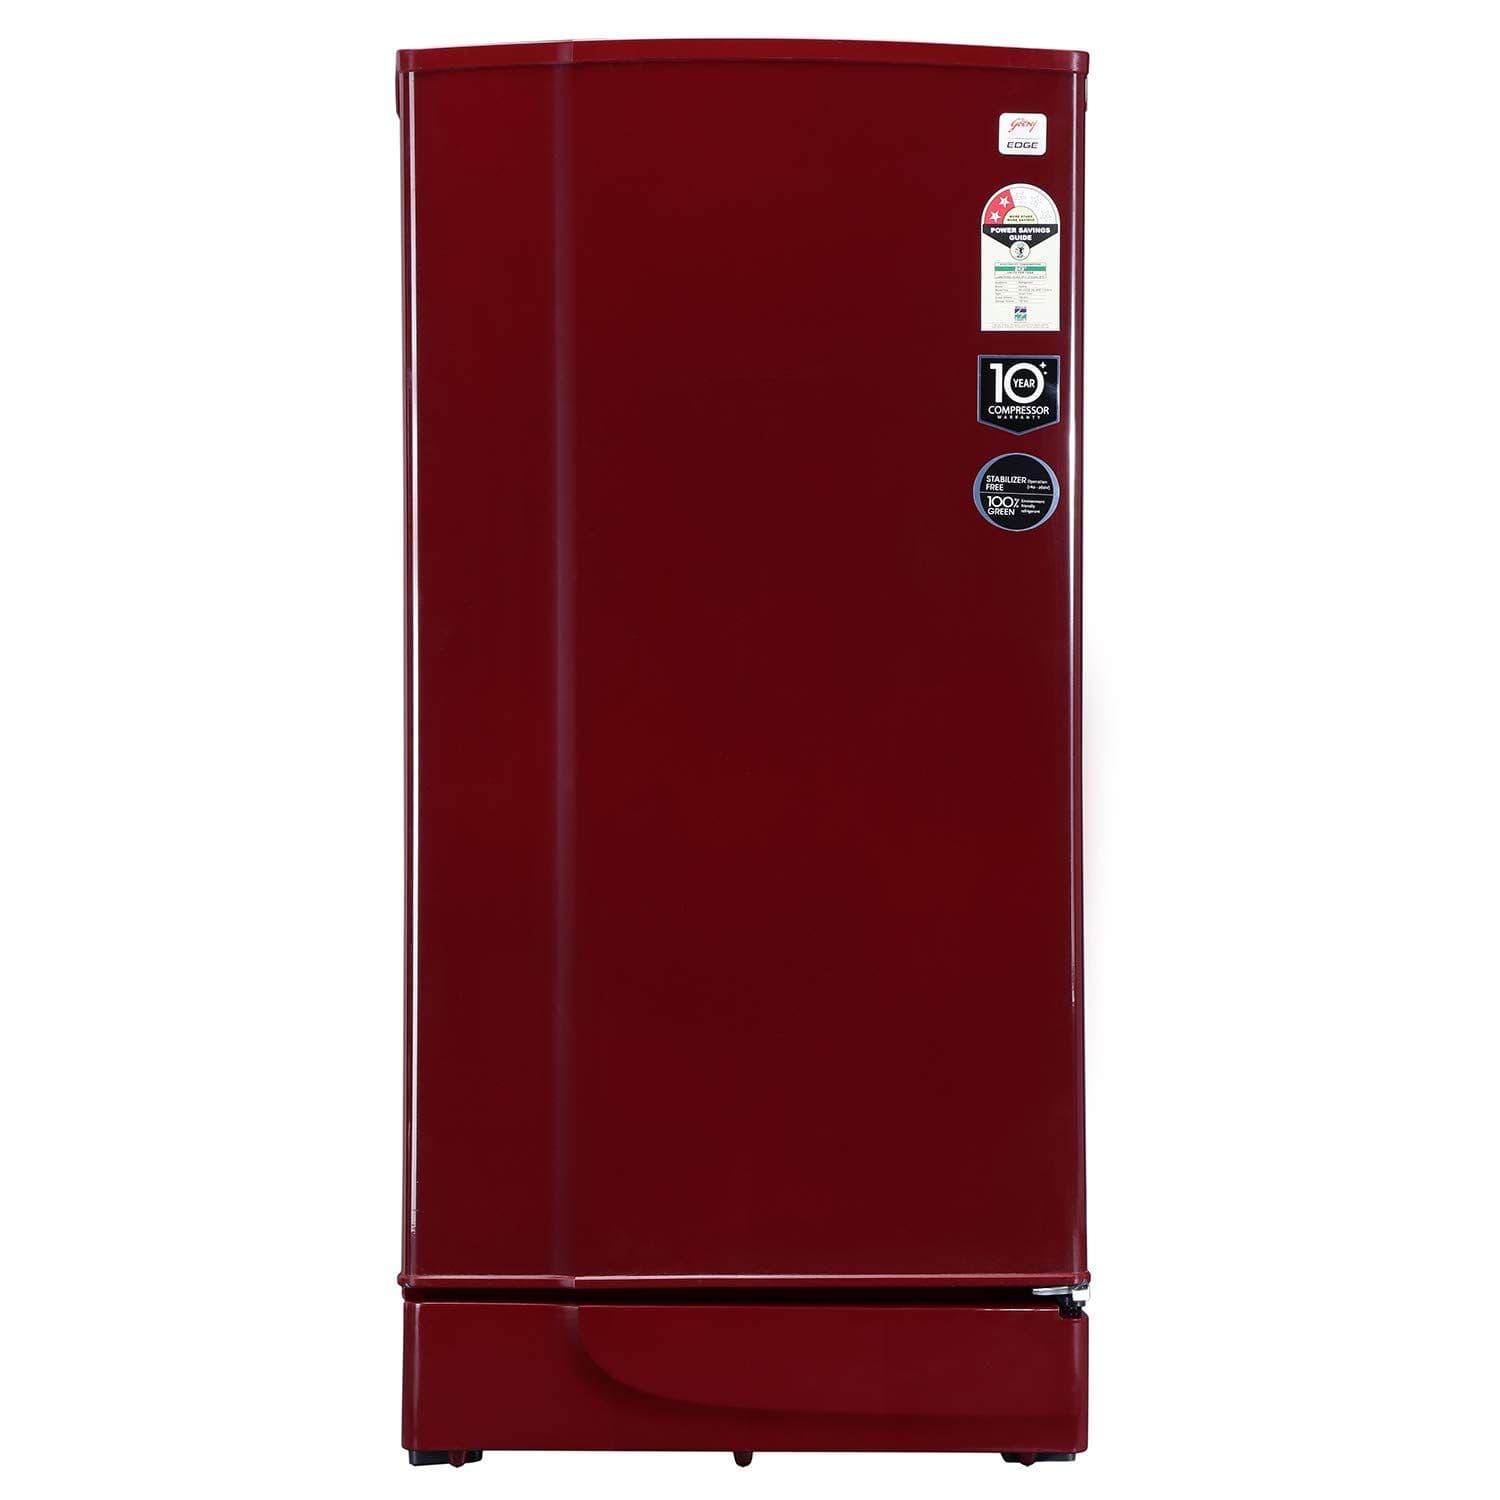 Godrej RD Edge 205 WRF 2.2 190 Ltr Single Door Refrigerator